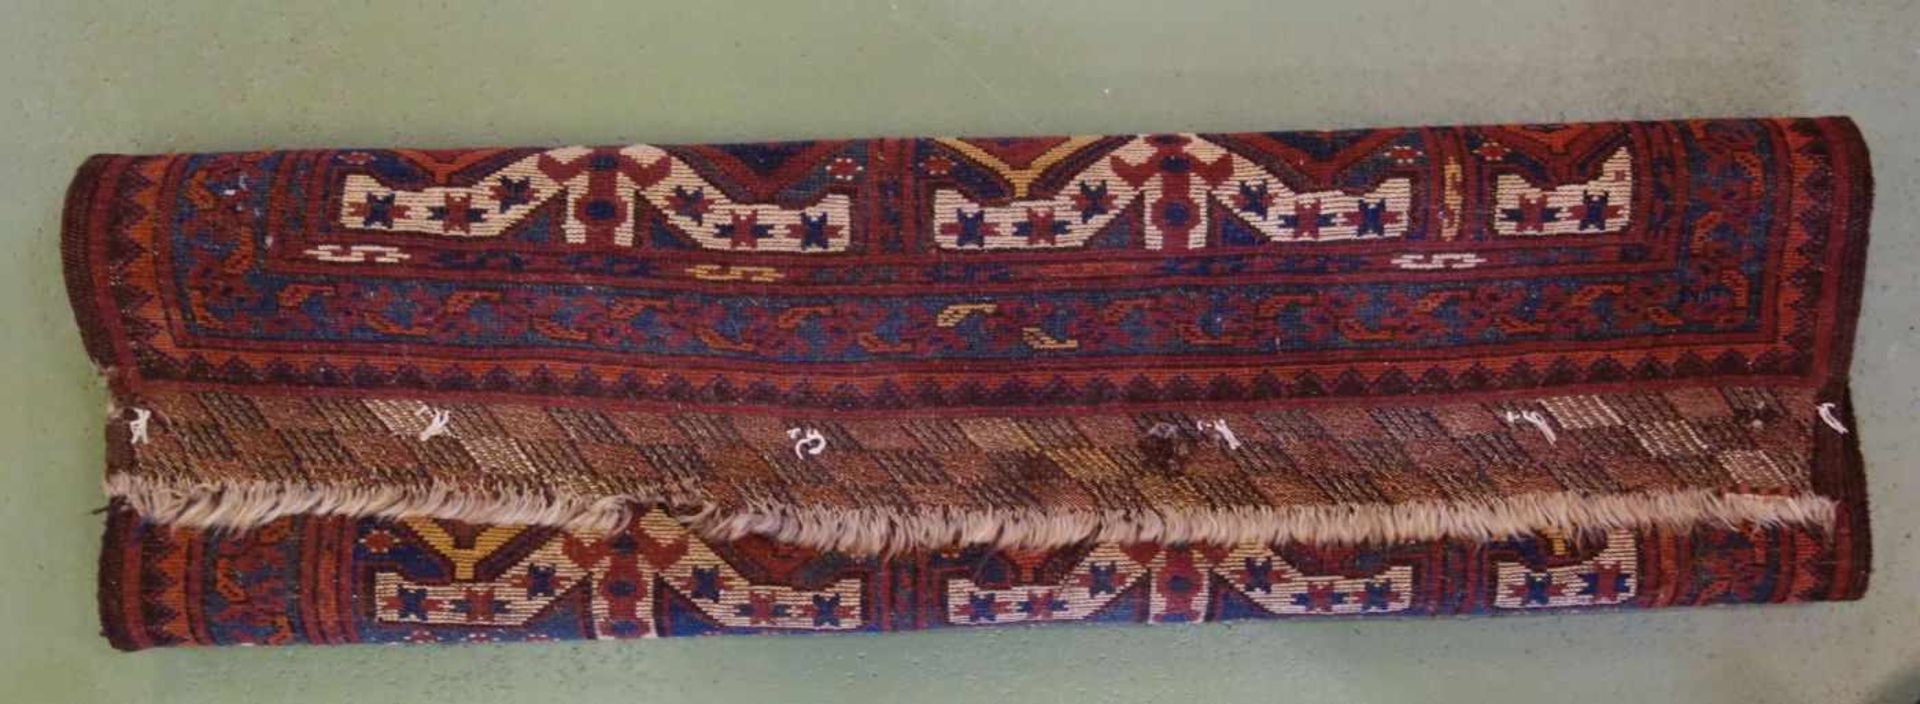 BESCHIR (ERSARI BESCHIR) / KLEINER TEPPICH / carpet / Zentralasien oder Südturkestan, wahrscheinlich - Image 6 of 15